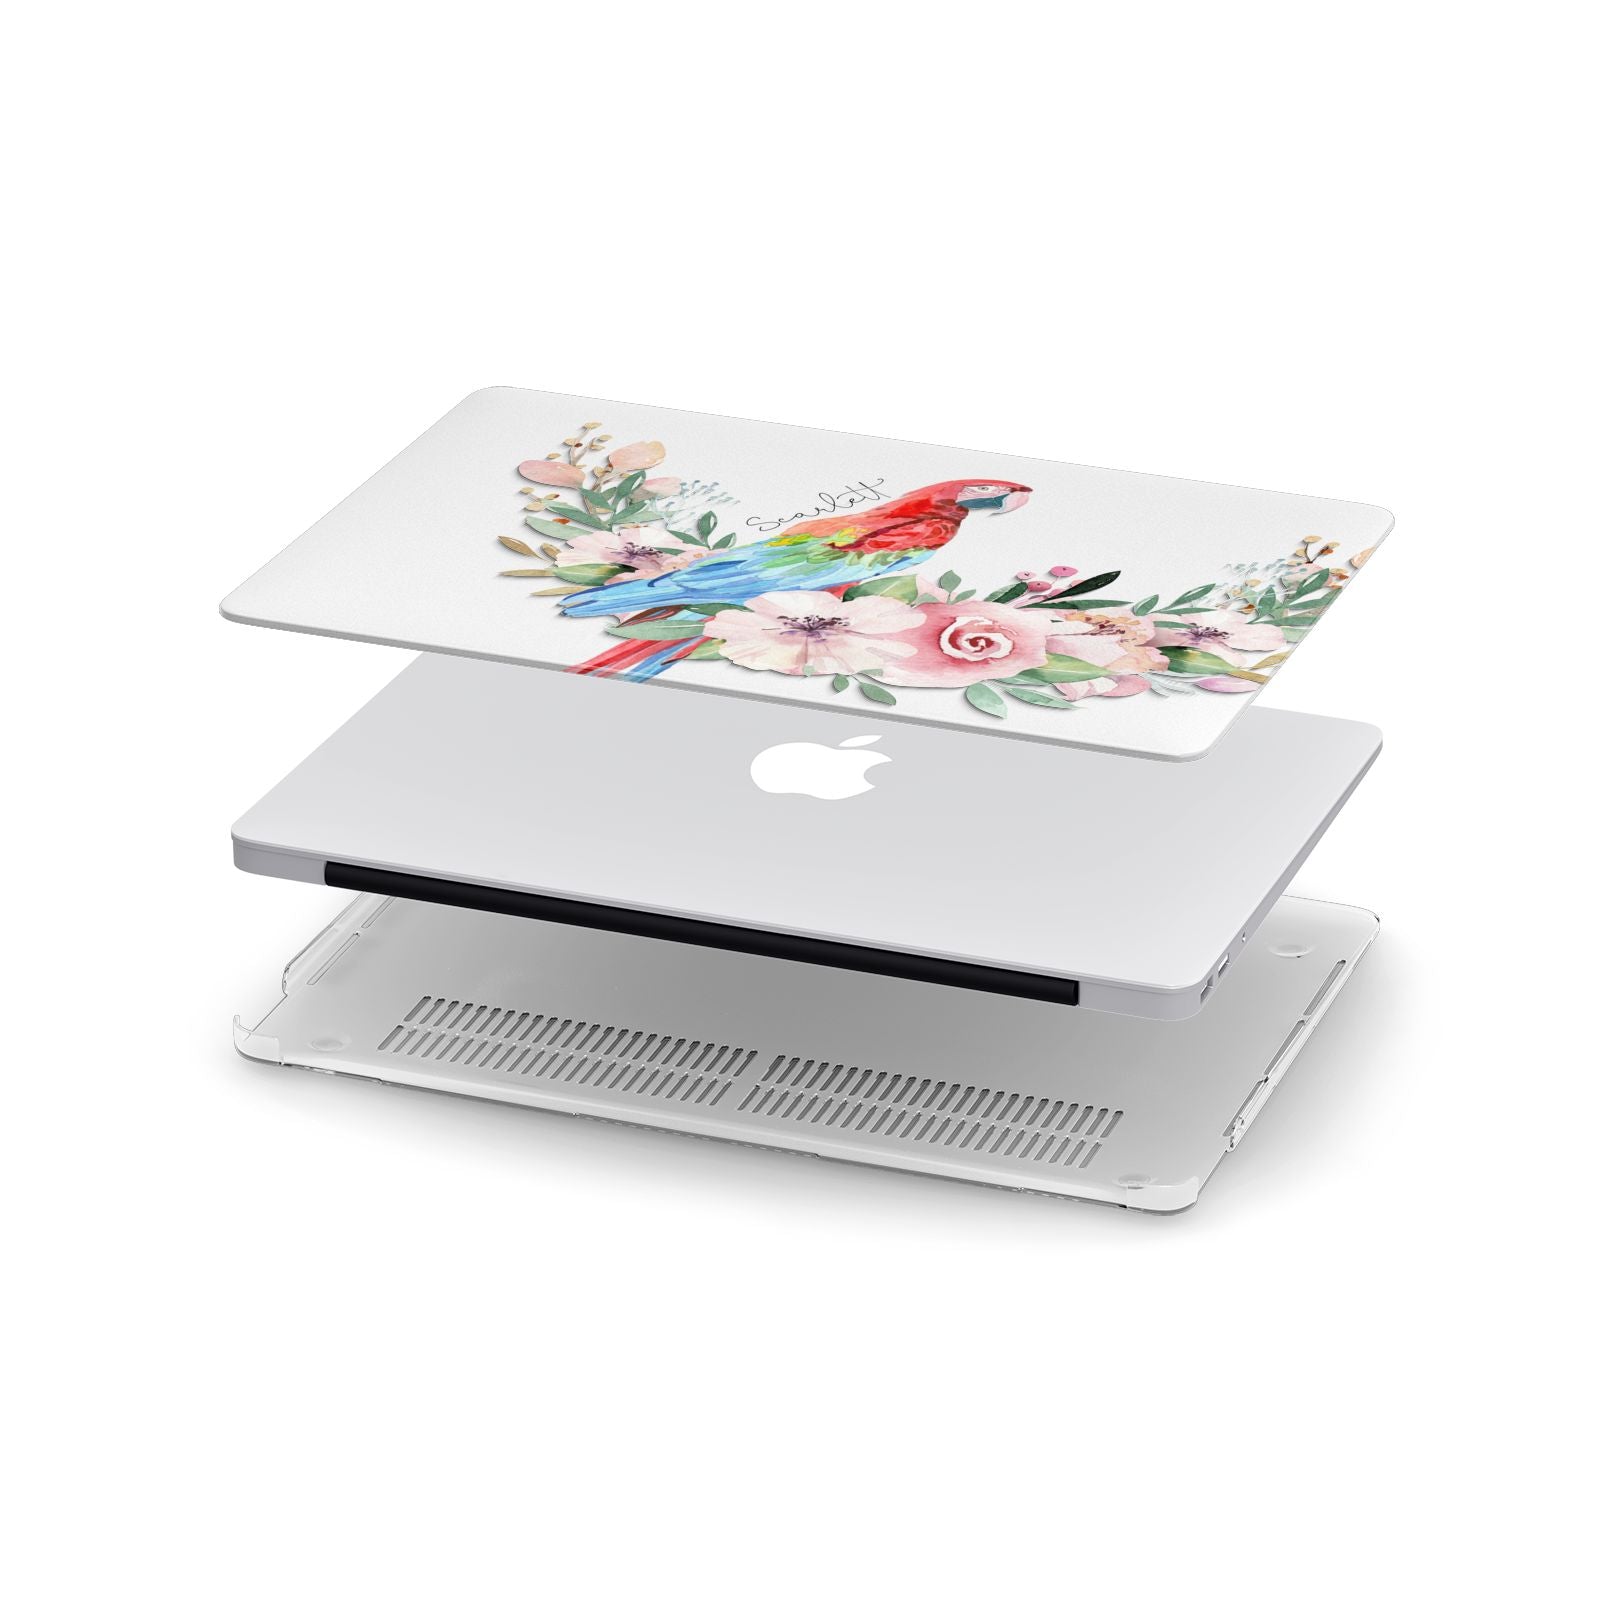 Personalised Parrot Apple MacBook Case in Detail